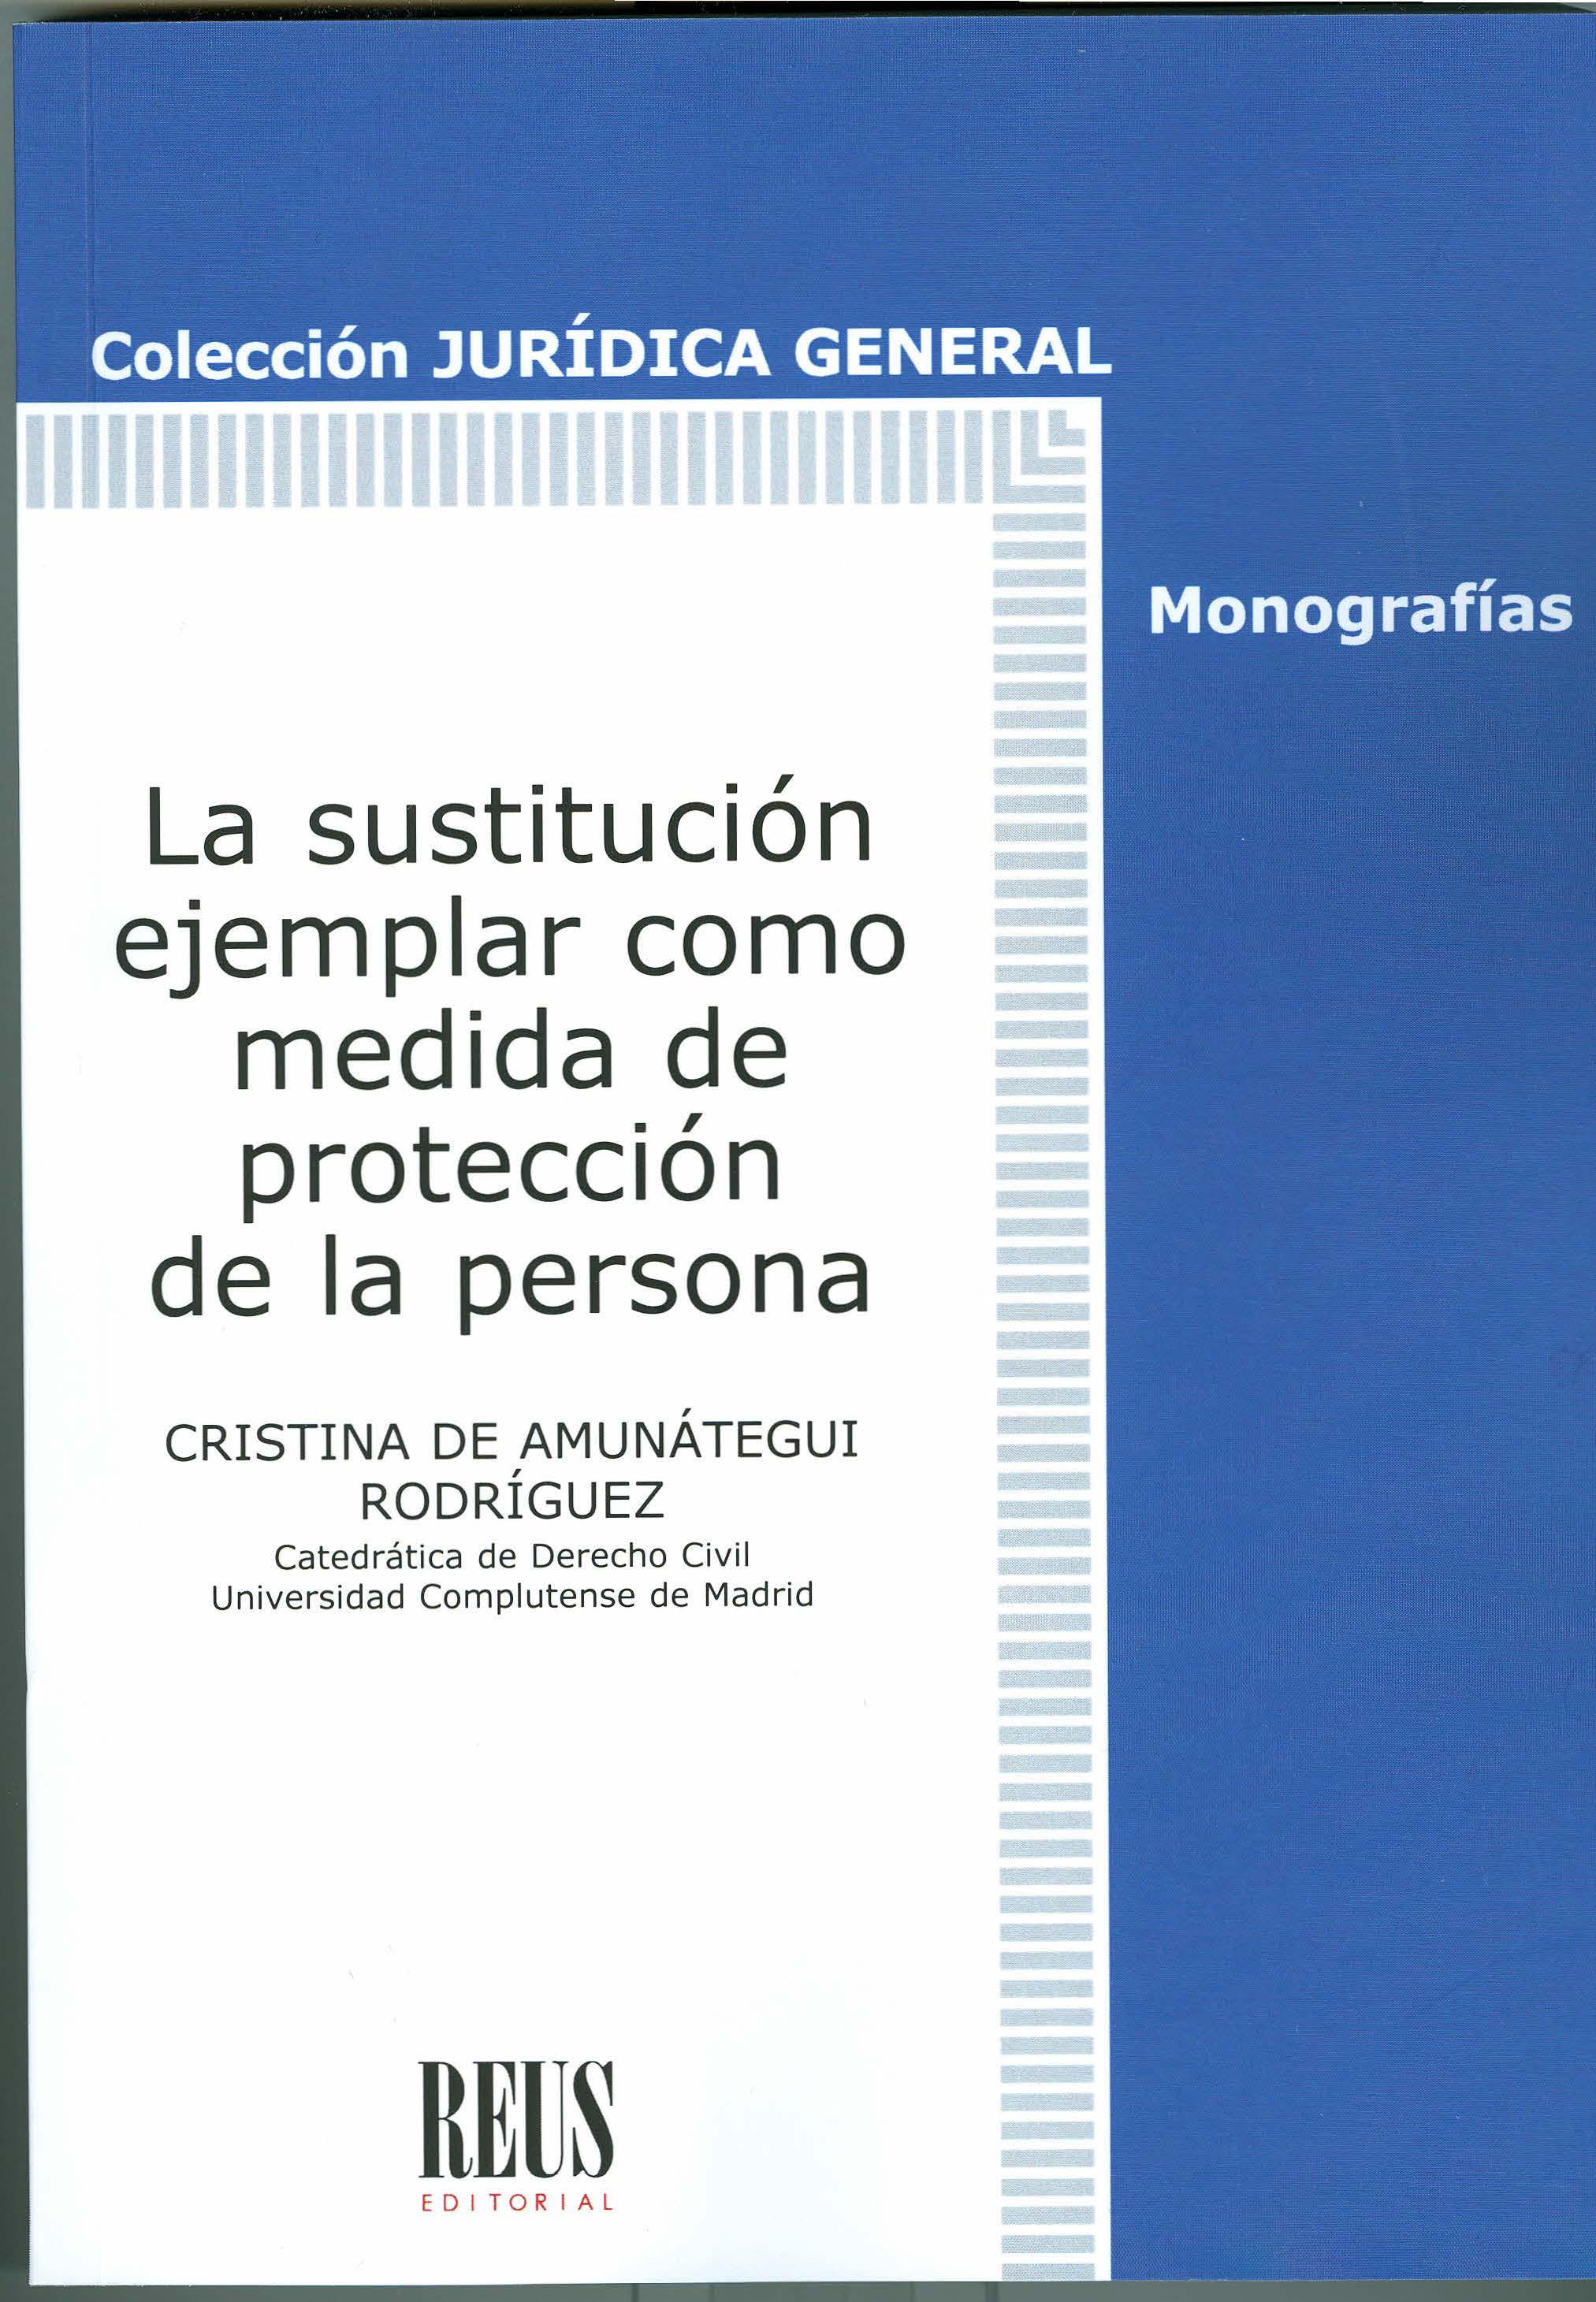 Imagen de portada del libro La sustitución ejemplar como medida de protección de la persona